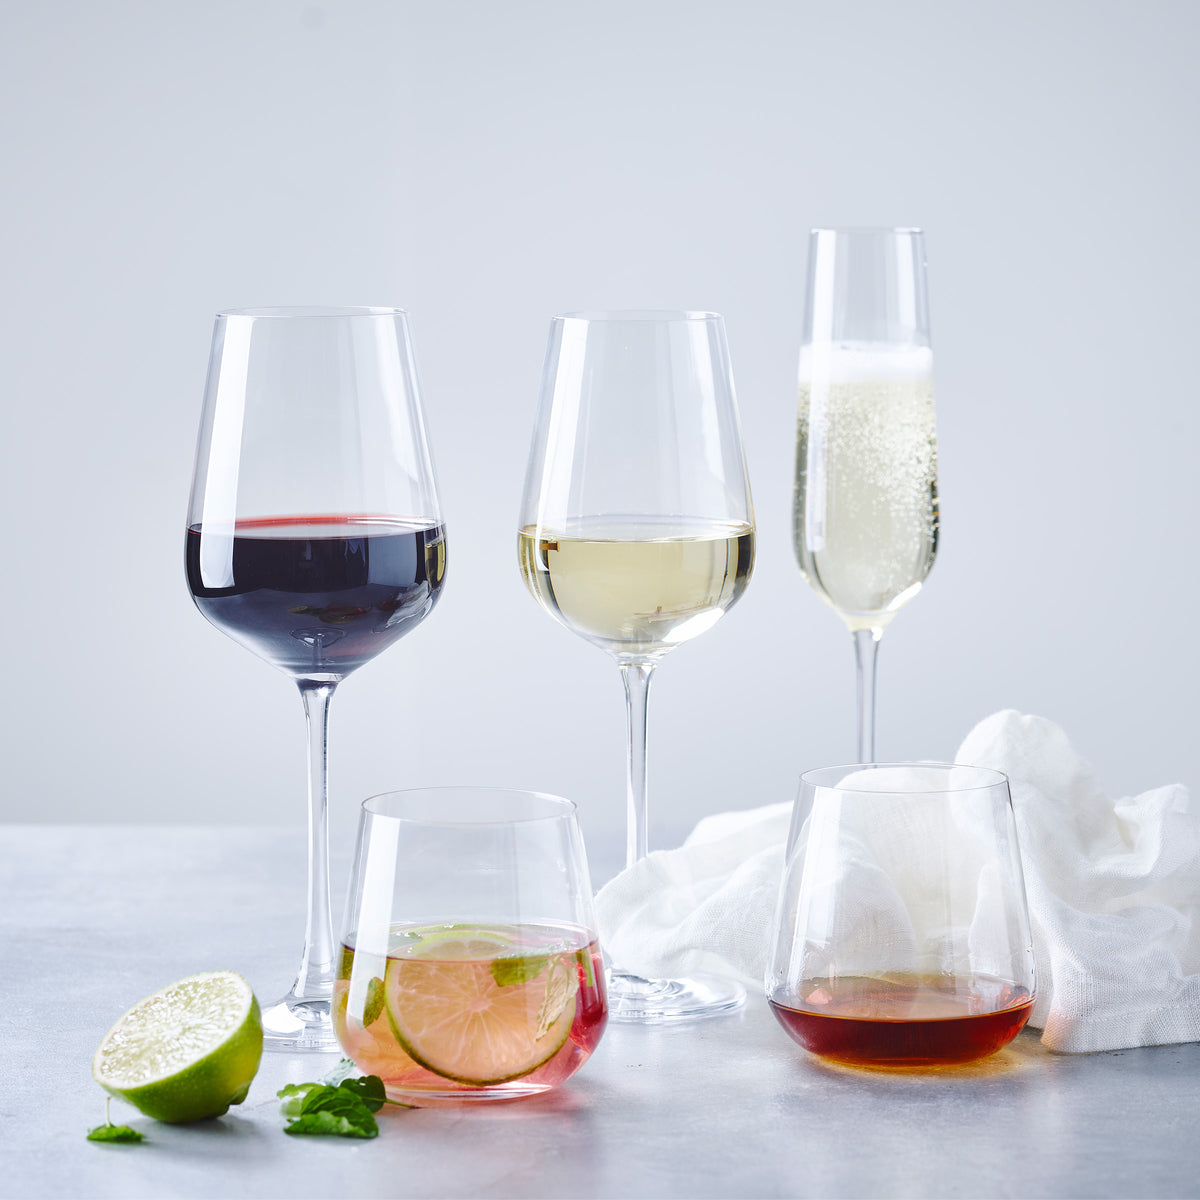 Wine Glasses, Red Wine Glasses & White Wine Glasses